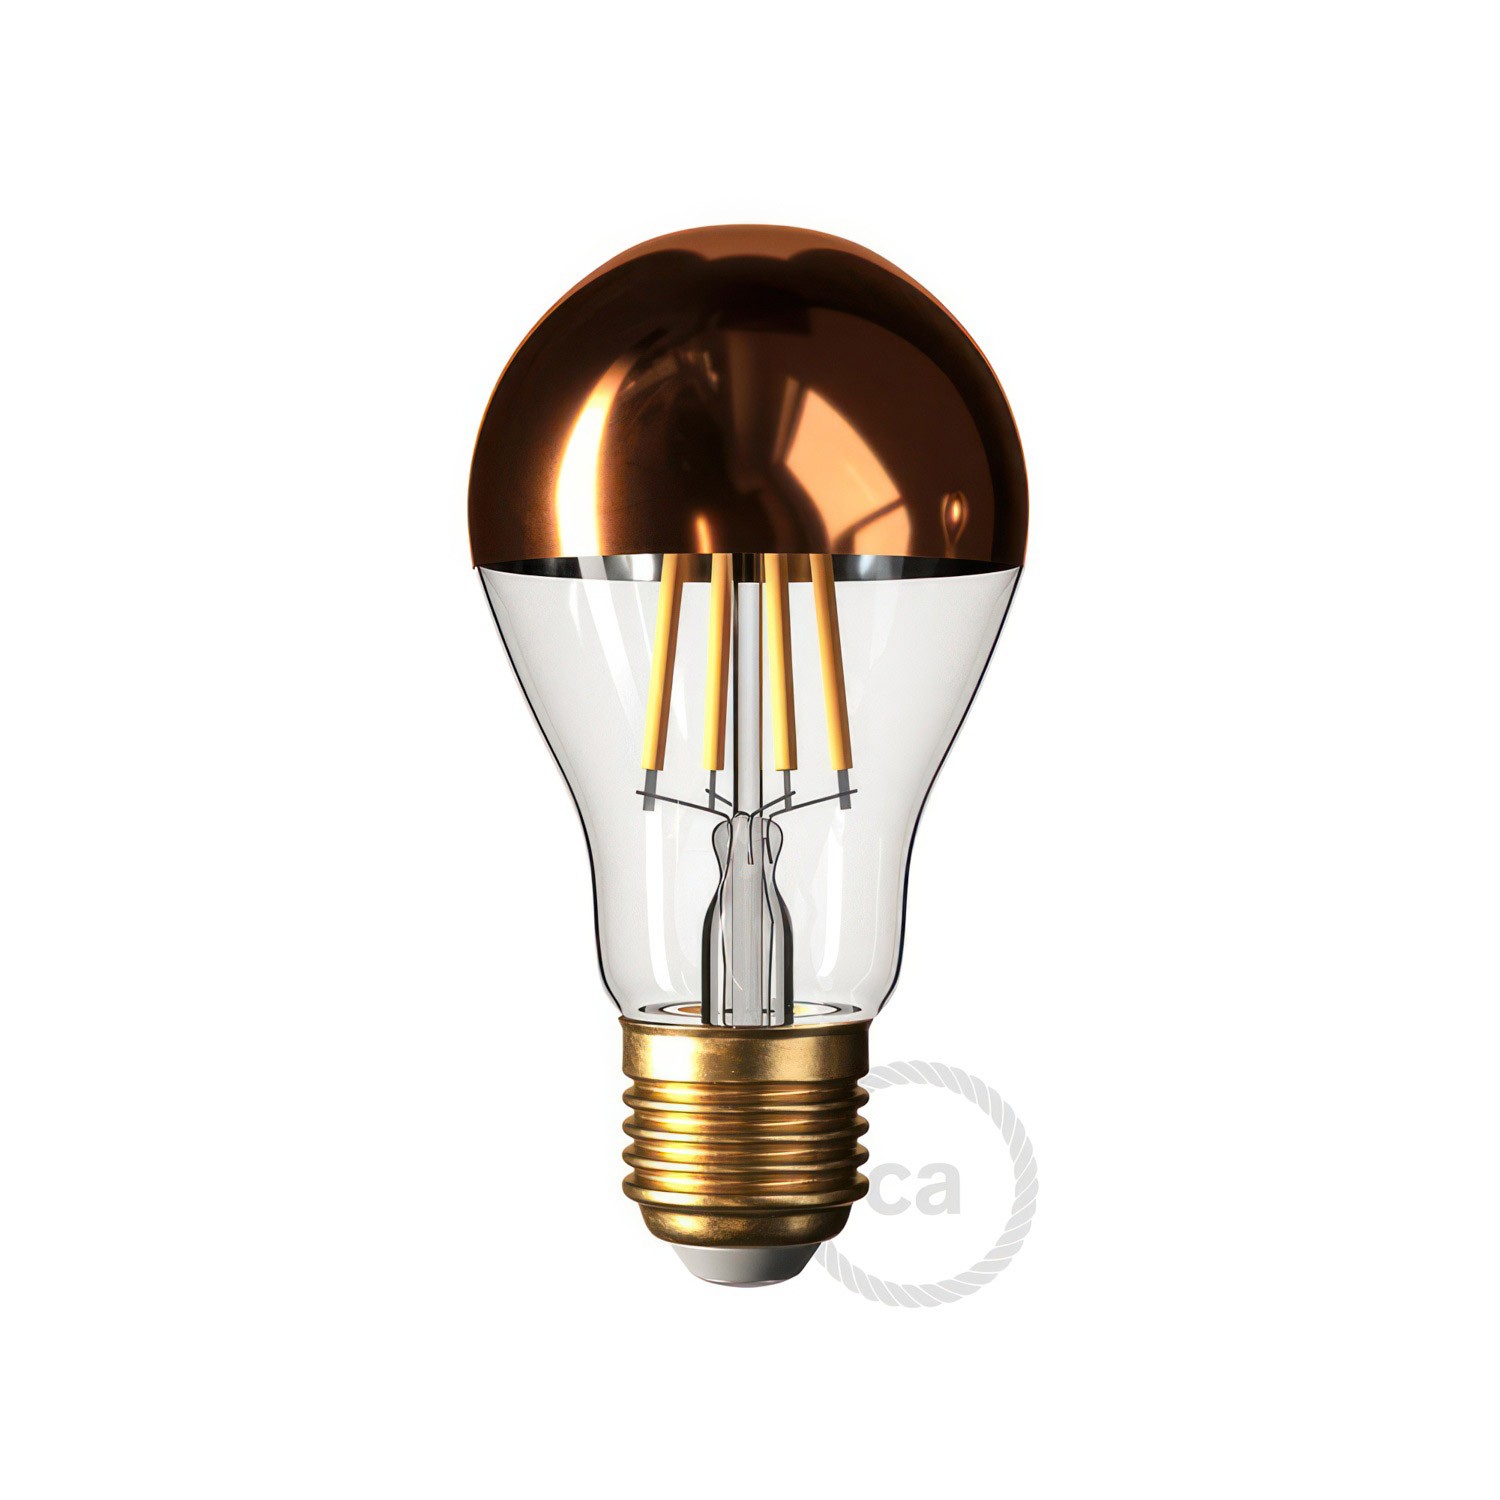 Flex 30 Lampa s Drop žaruljom